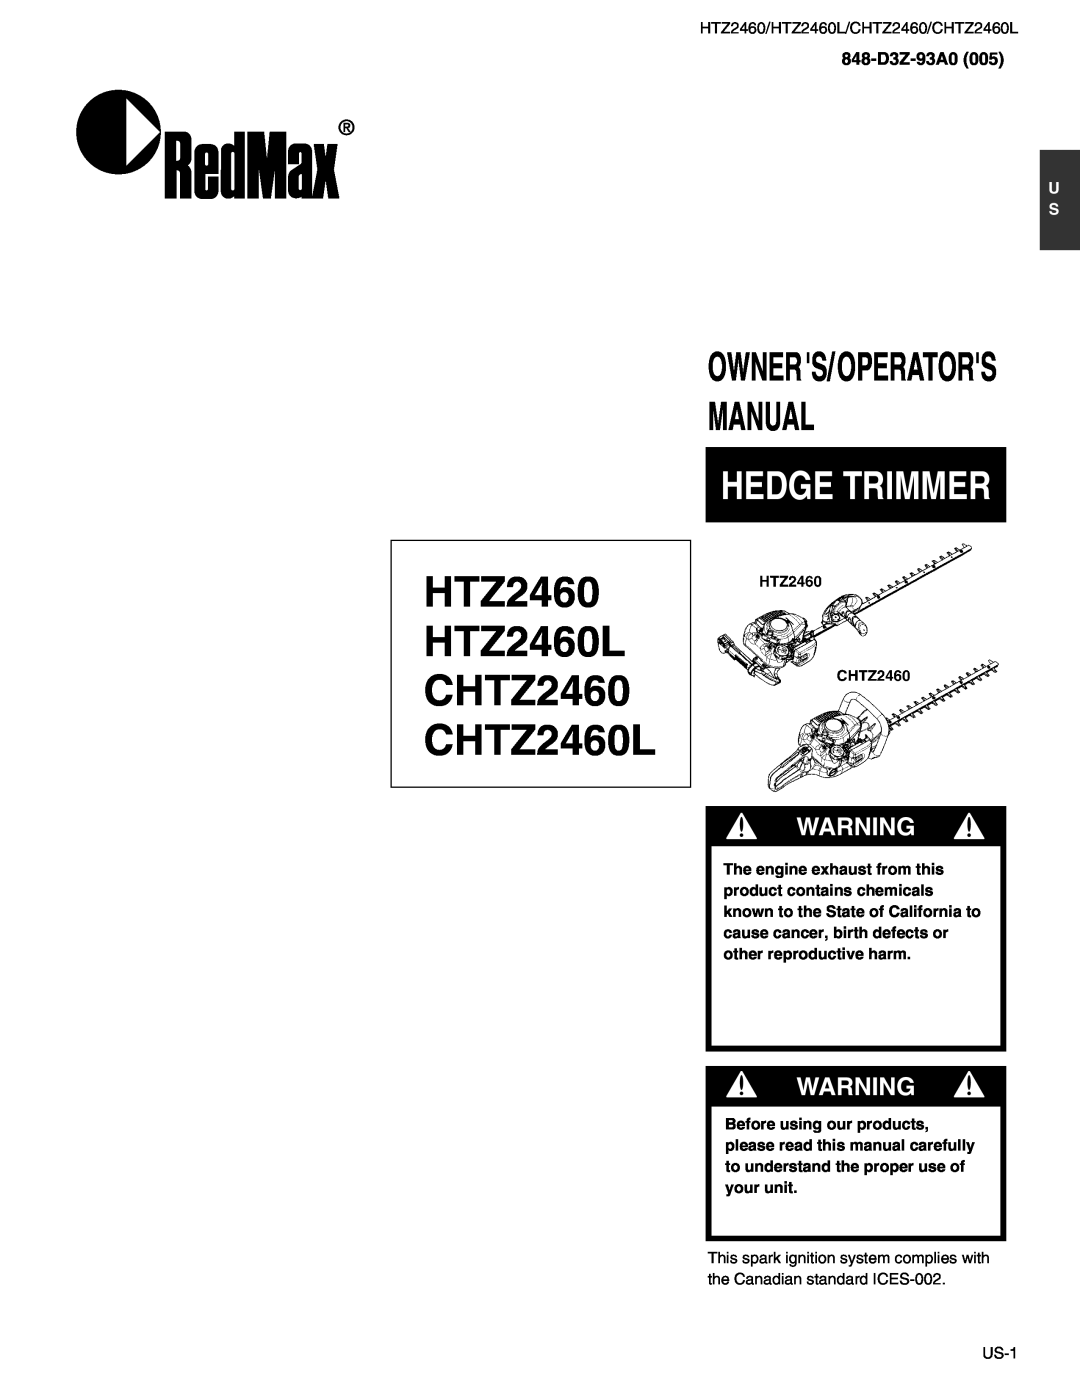 RedMax manual 848-D3Z-93A0, HTZ2460 HTZ2460L CHTZ2460 CHTZ2460L, Manual, Hedge Trimmer, Owners/Operators 